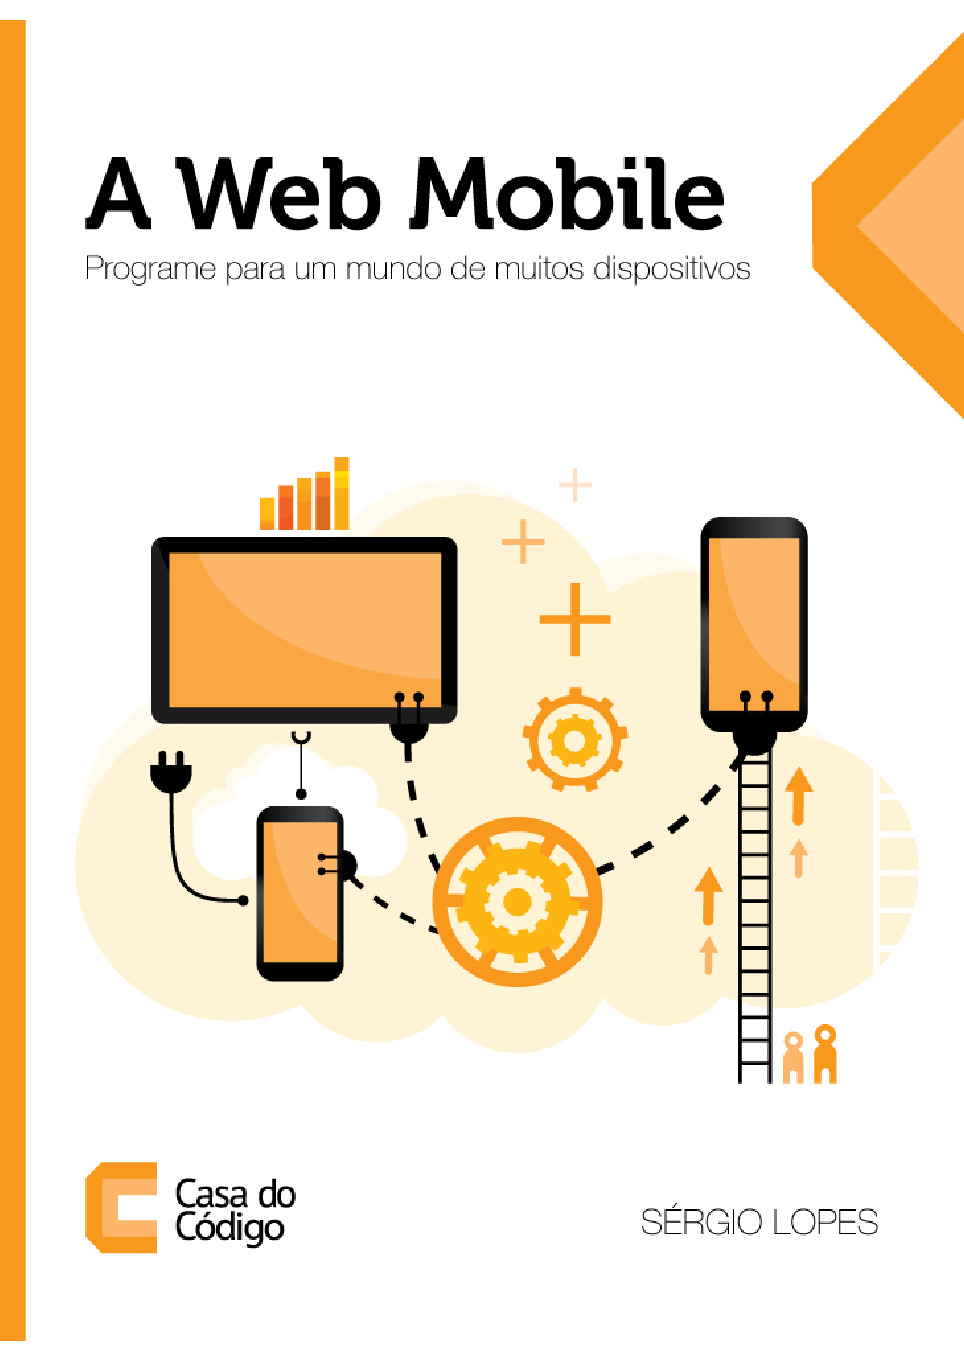 A Web Mobile – Programe para um Mundo de Muitos Dispositivos – Casa do Codigo